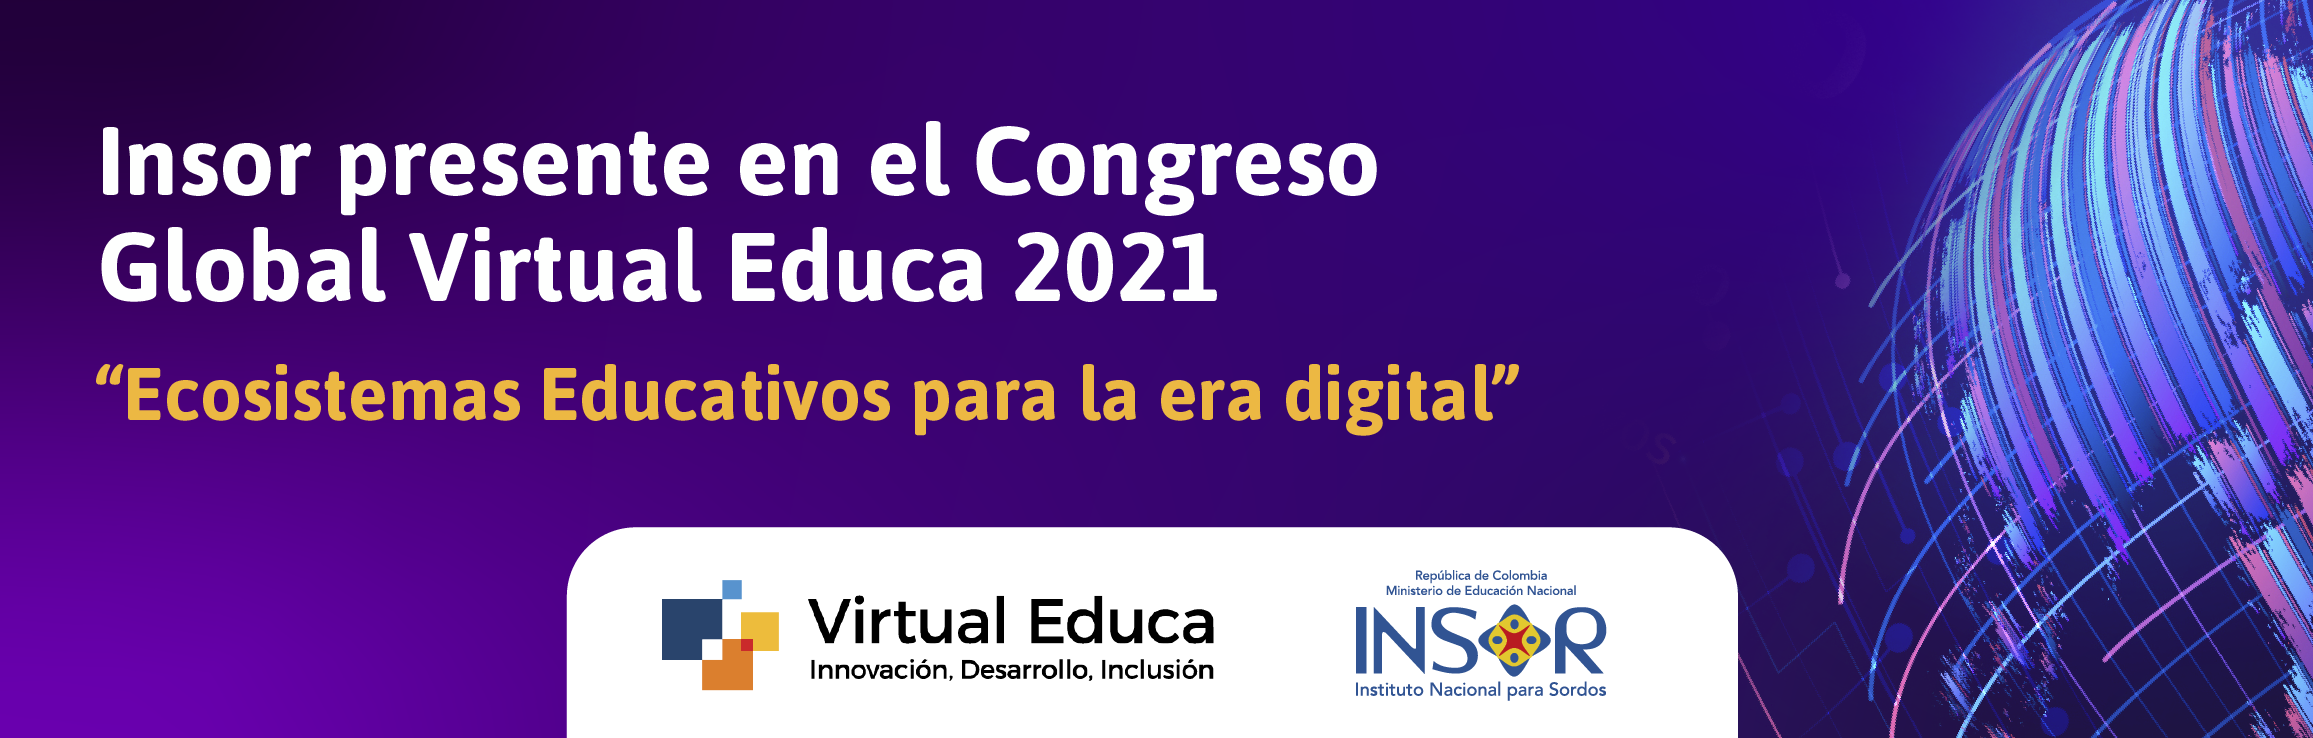 Insor presente en el Congreso Global Virtual Educa 2021 “Ecosistemas Educativos para la era digital